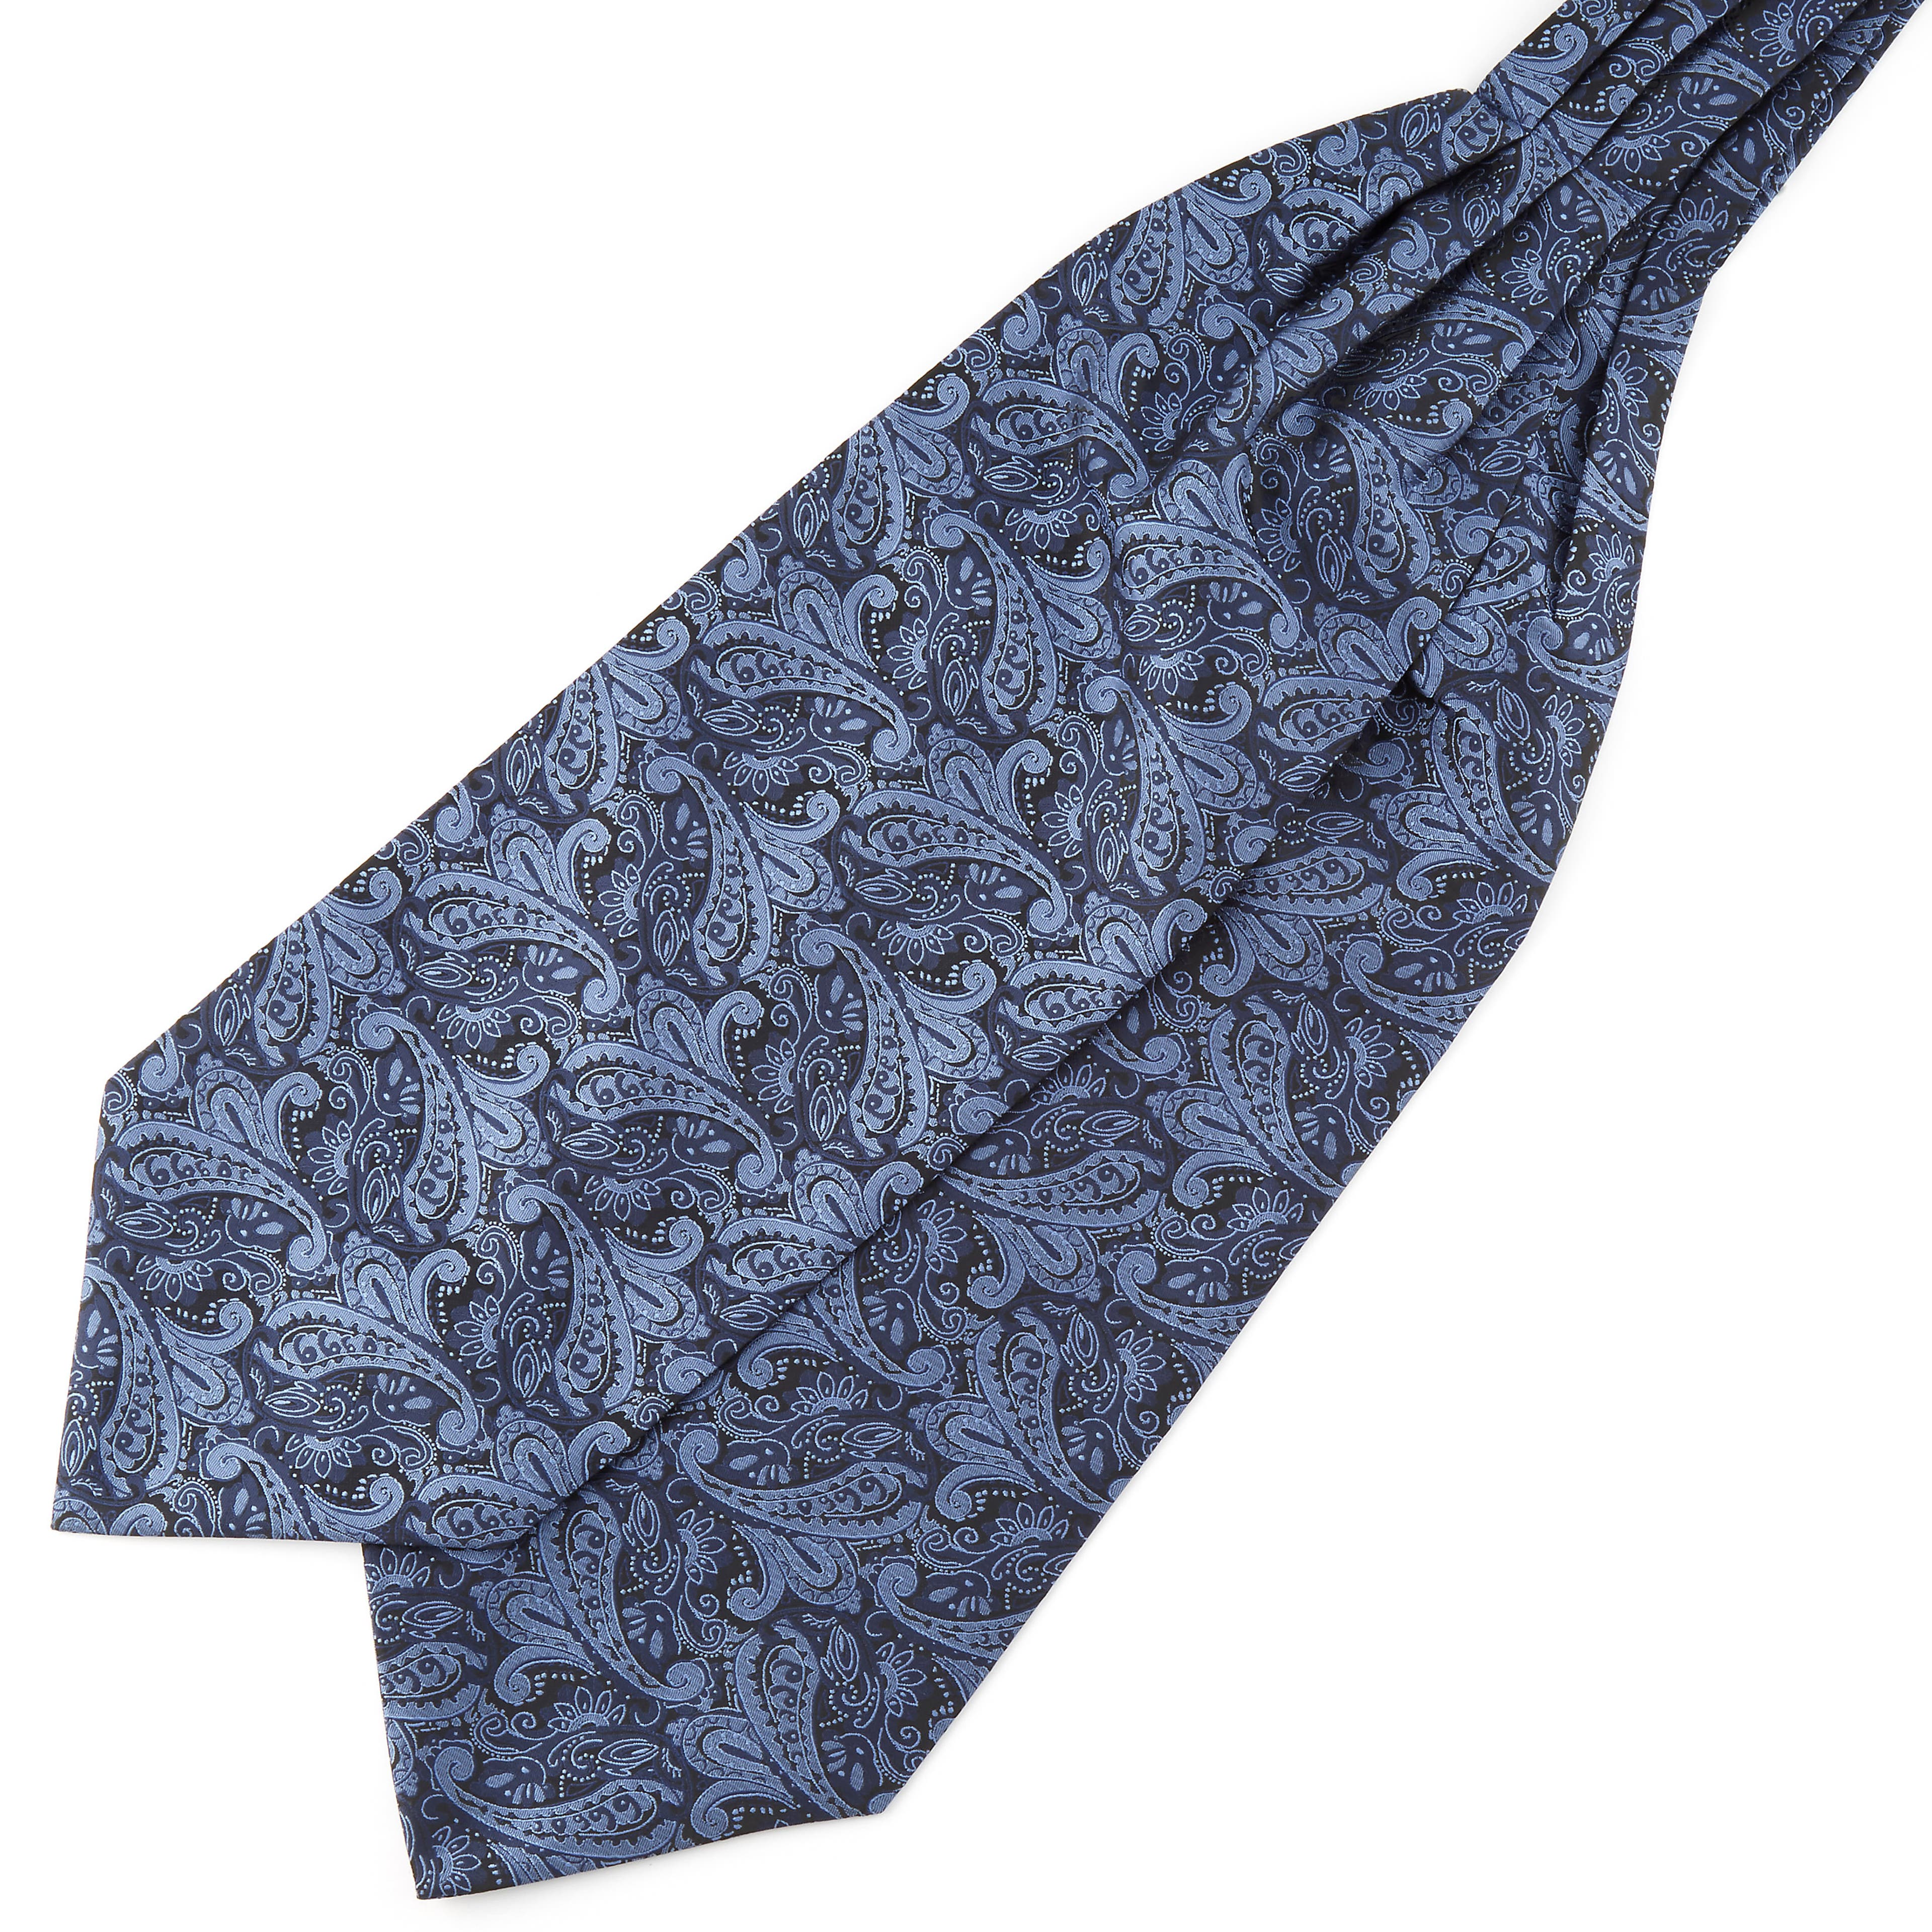 Cravată ascot din poliester cu model paisley bleumarin și albastru